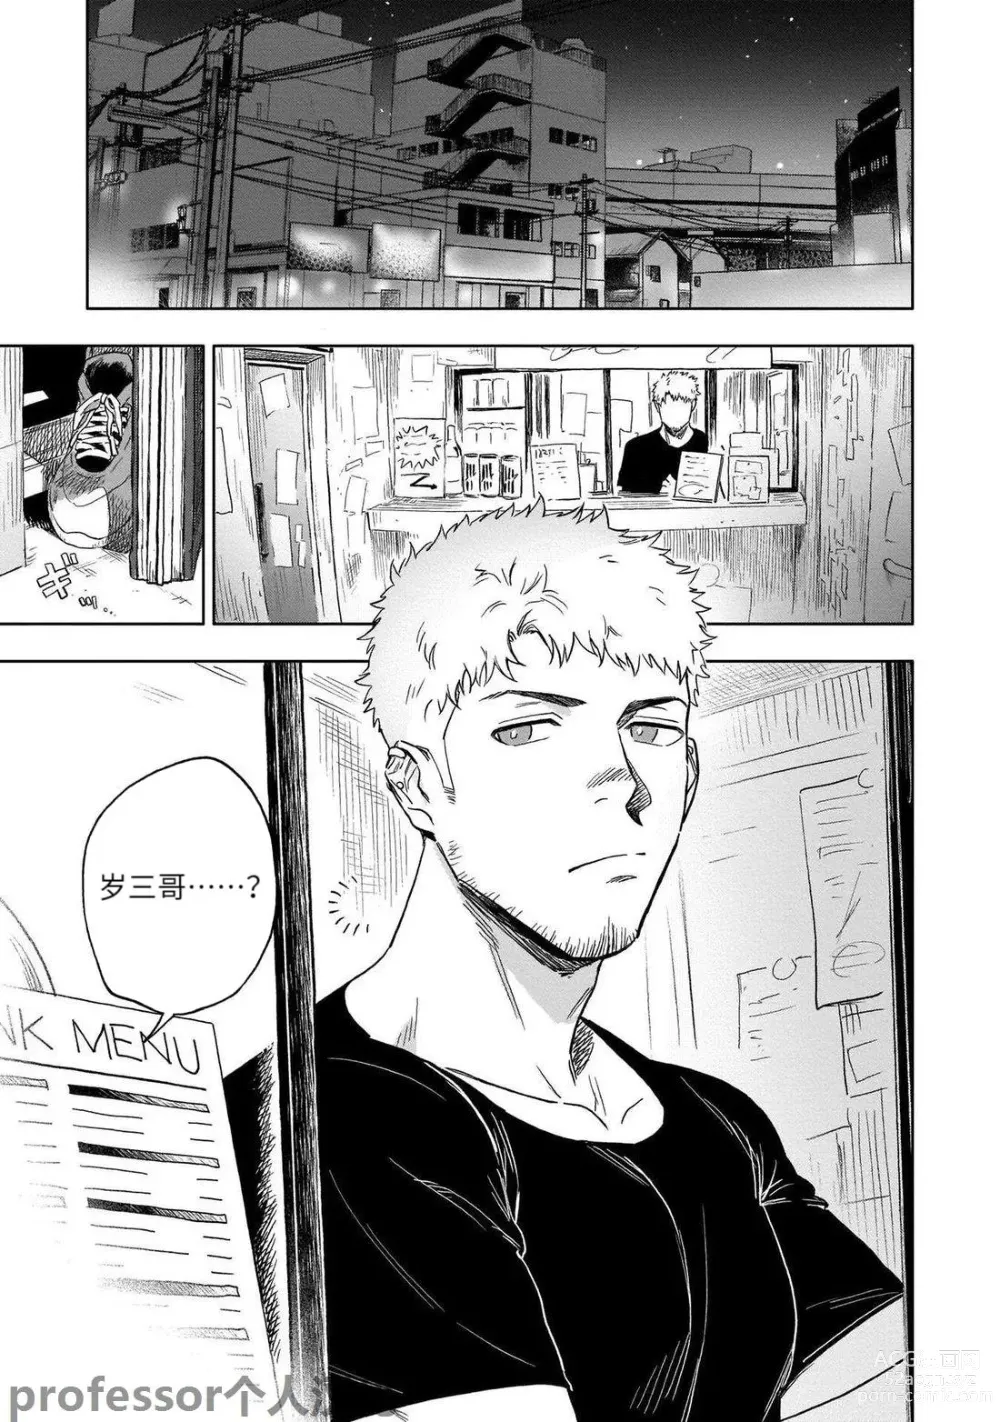 Page 3 of manga HIDK